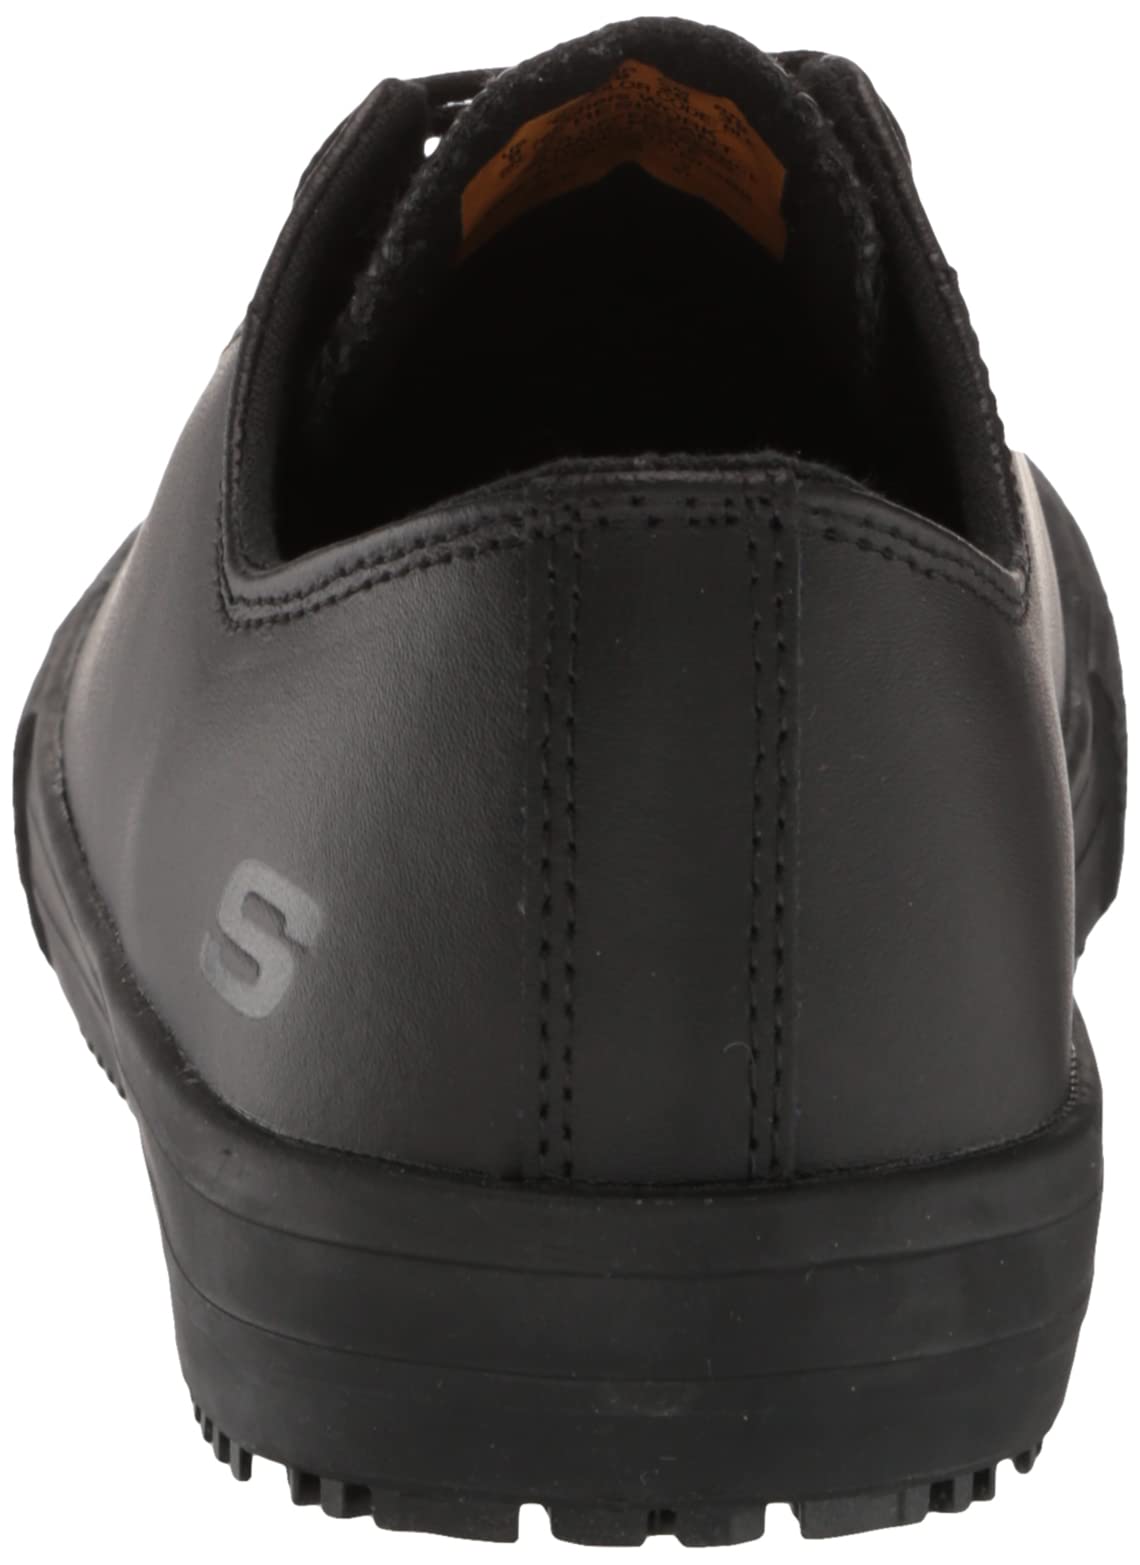 Skechers for Work Women's Gibson-Hardwood Slip Resistant Sneaker